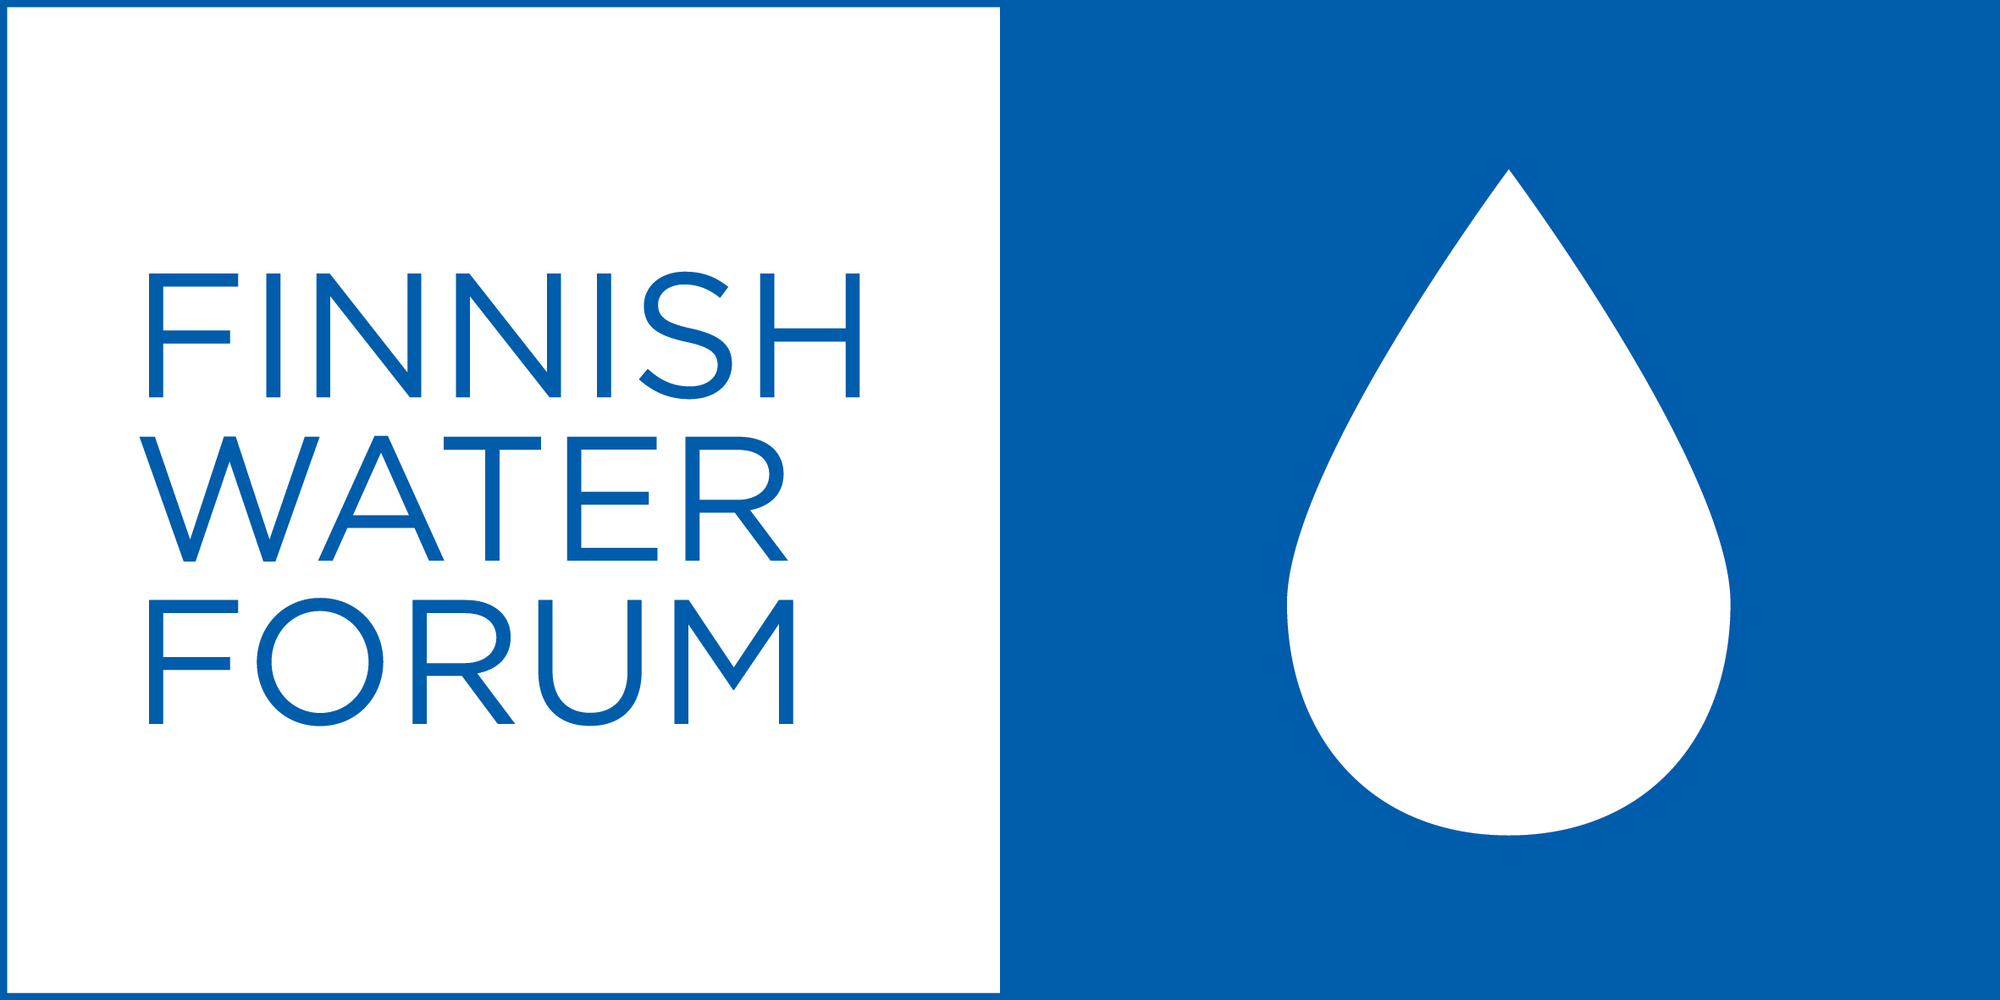 Finnish water forum weeefiner member